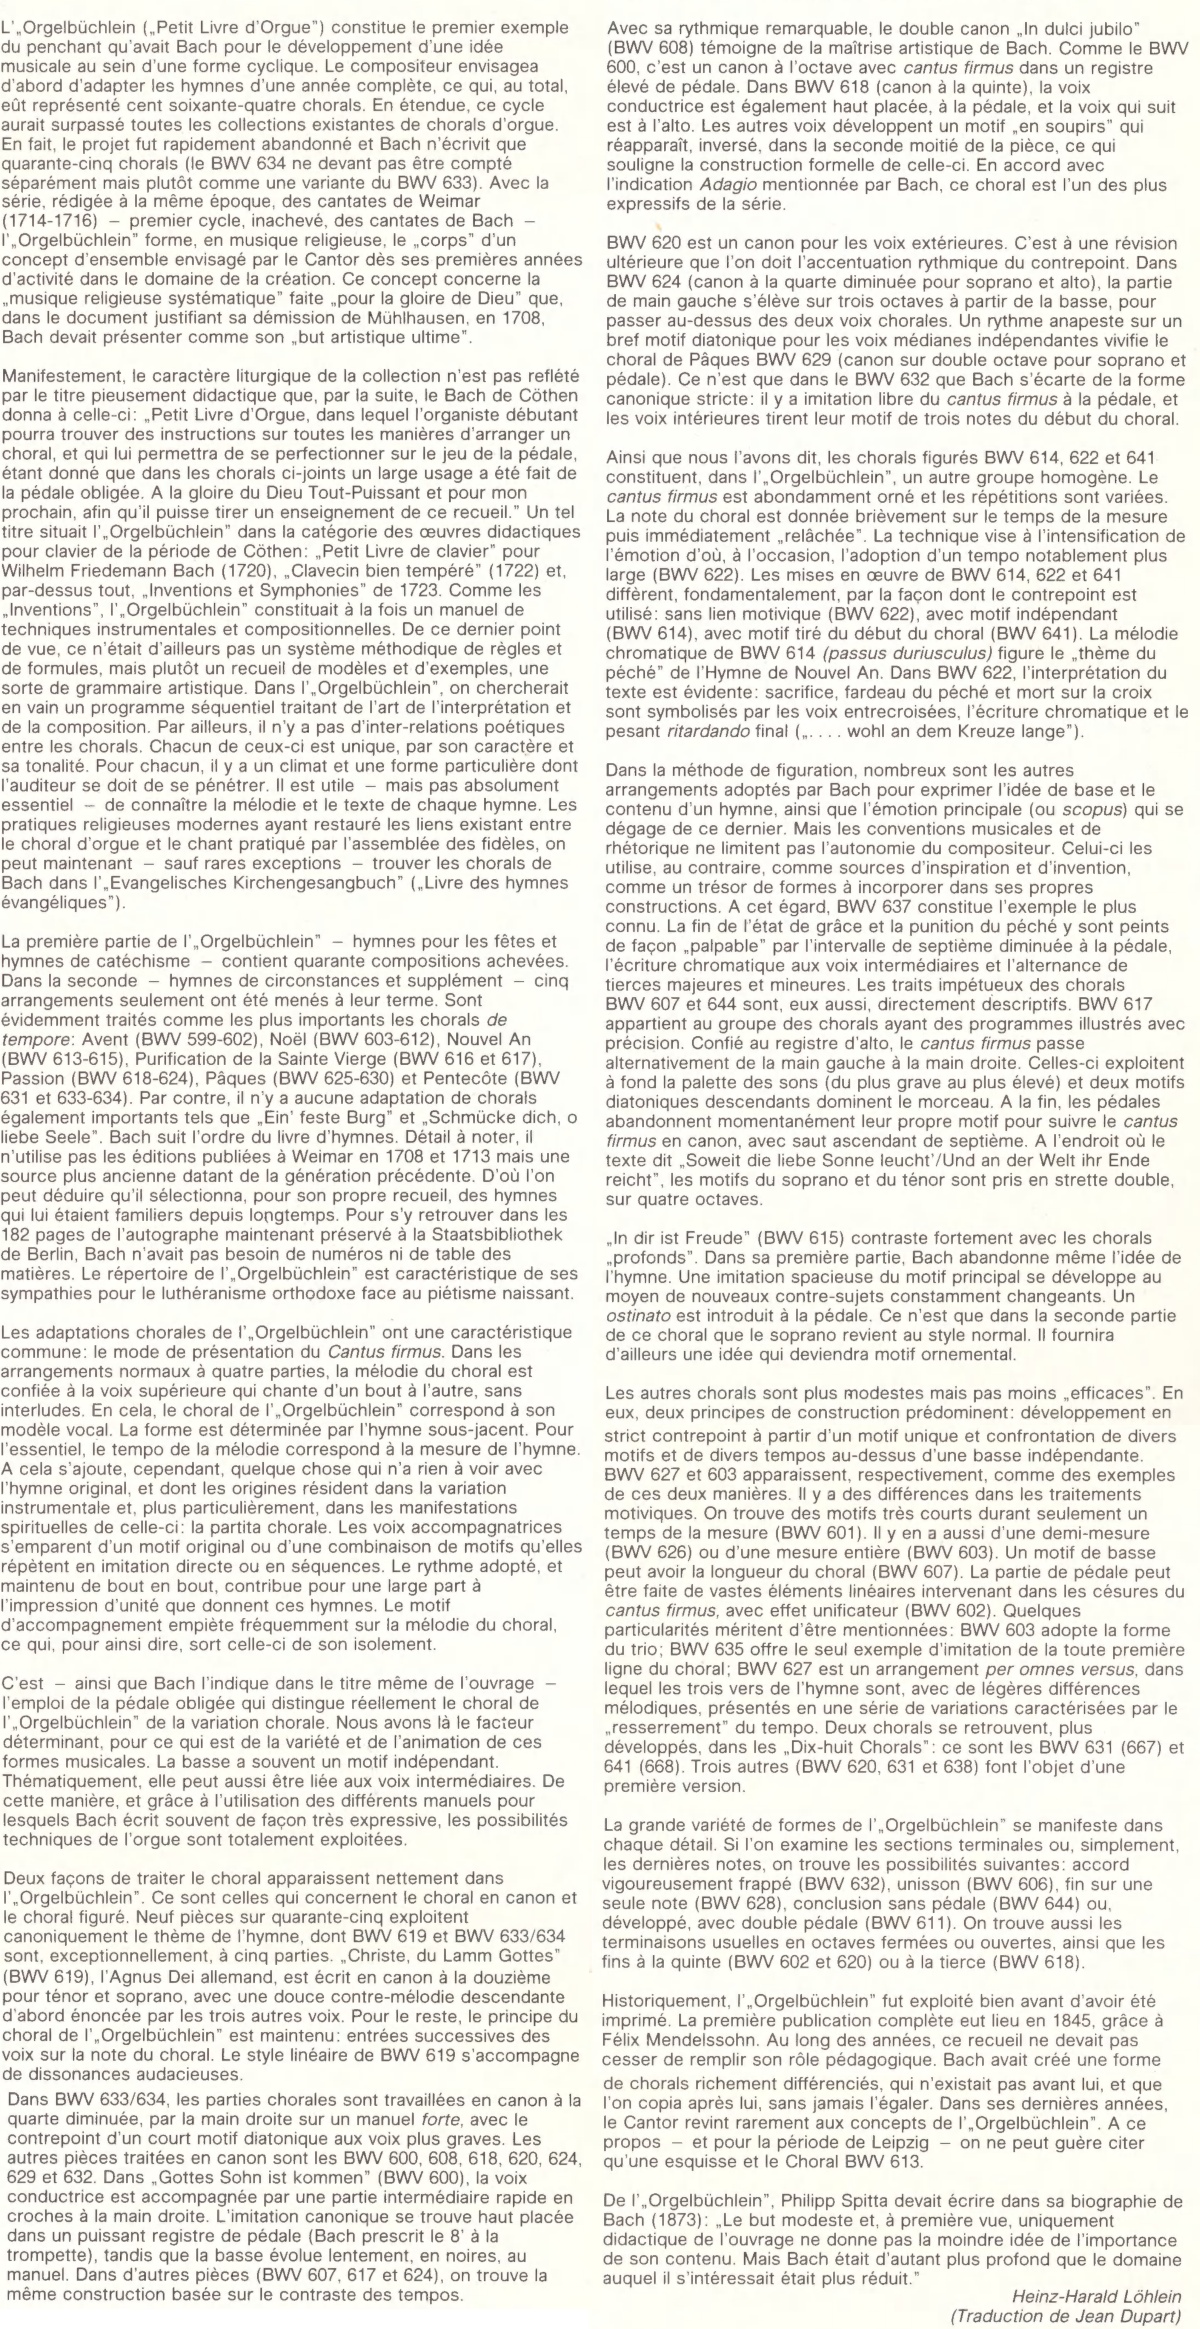 Cité des notes de Heinz-Harald LÖHLEIN - dans la traduction de Jean DUPART - publiées en 1977 dans l'album Philips 6700 115